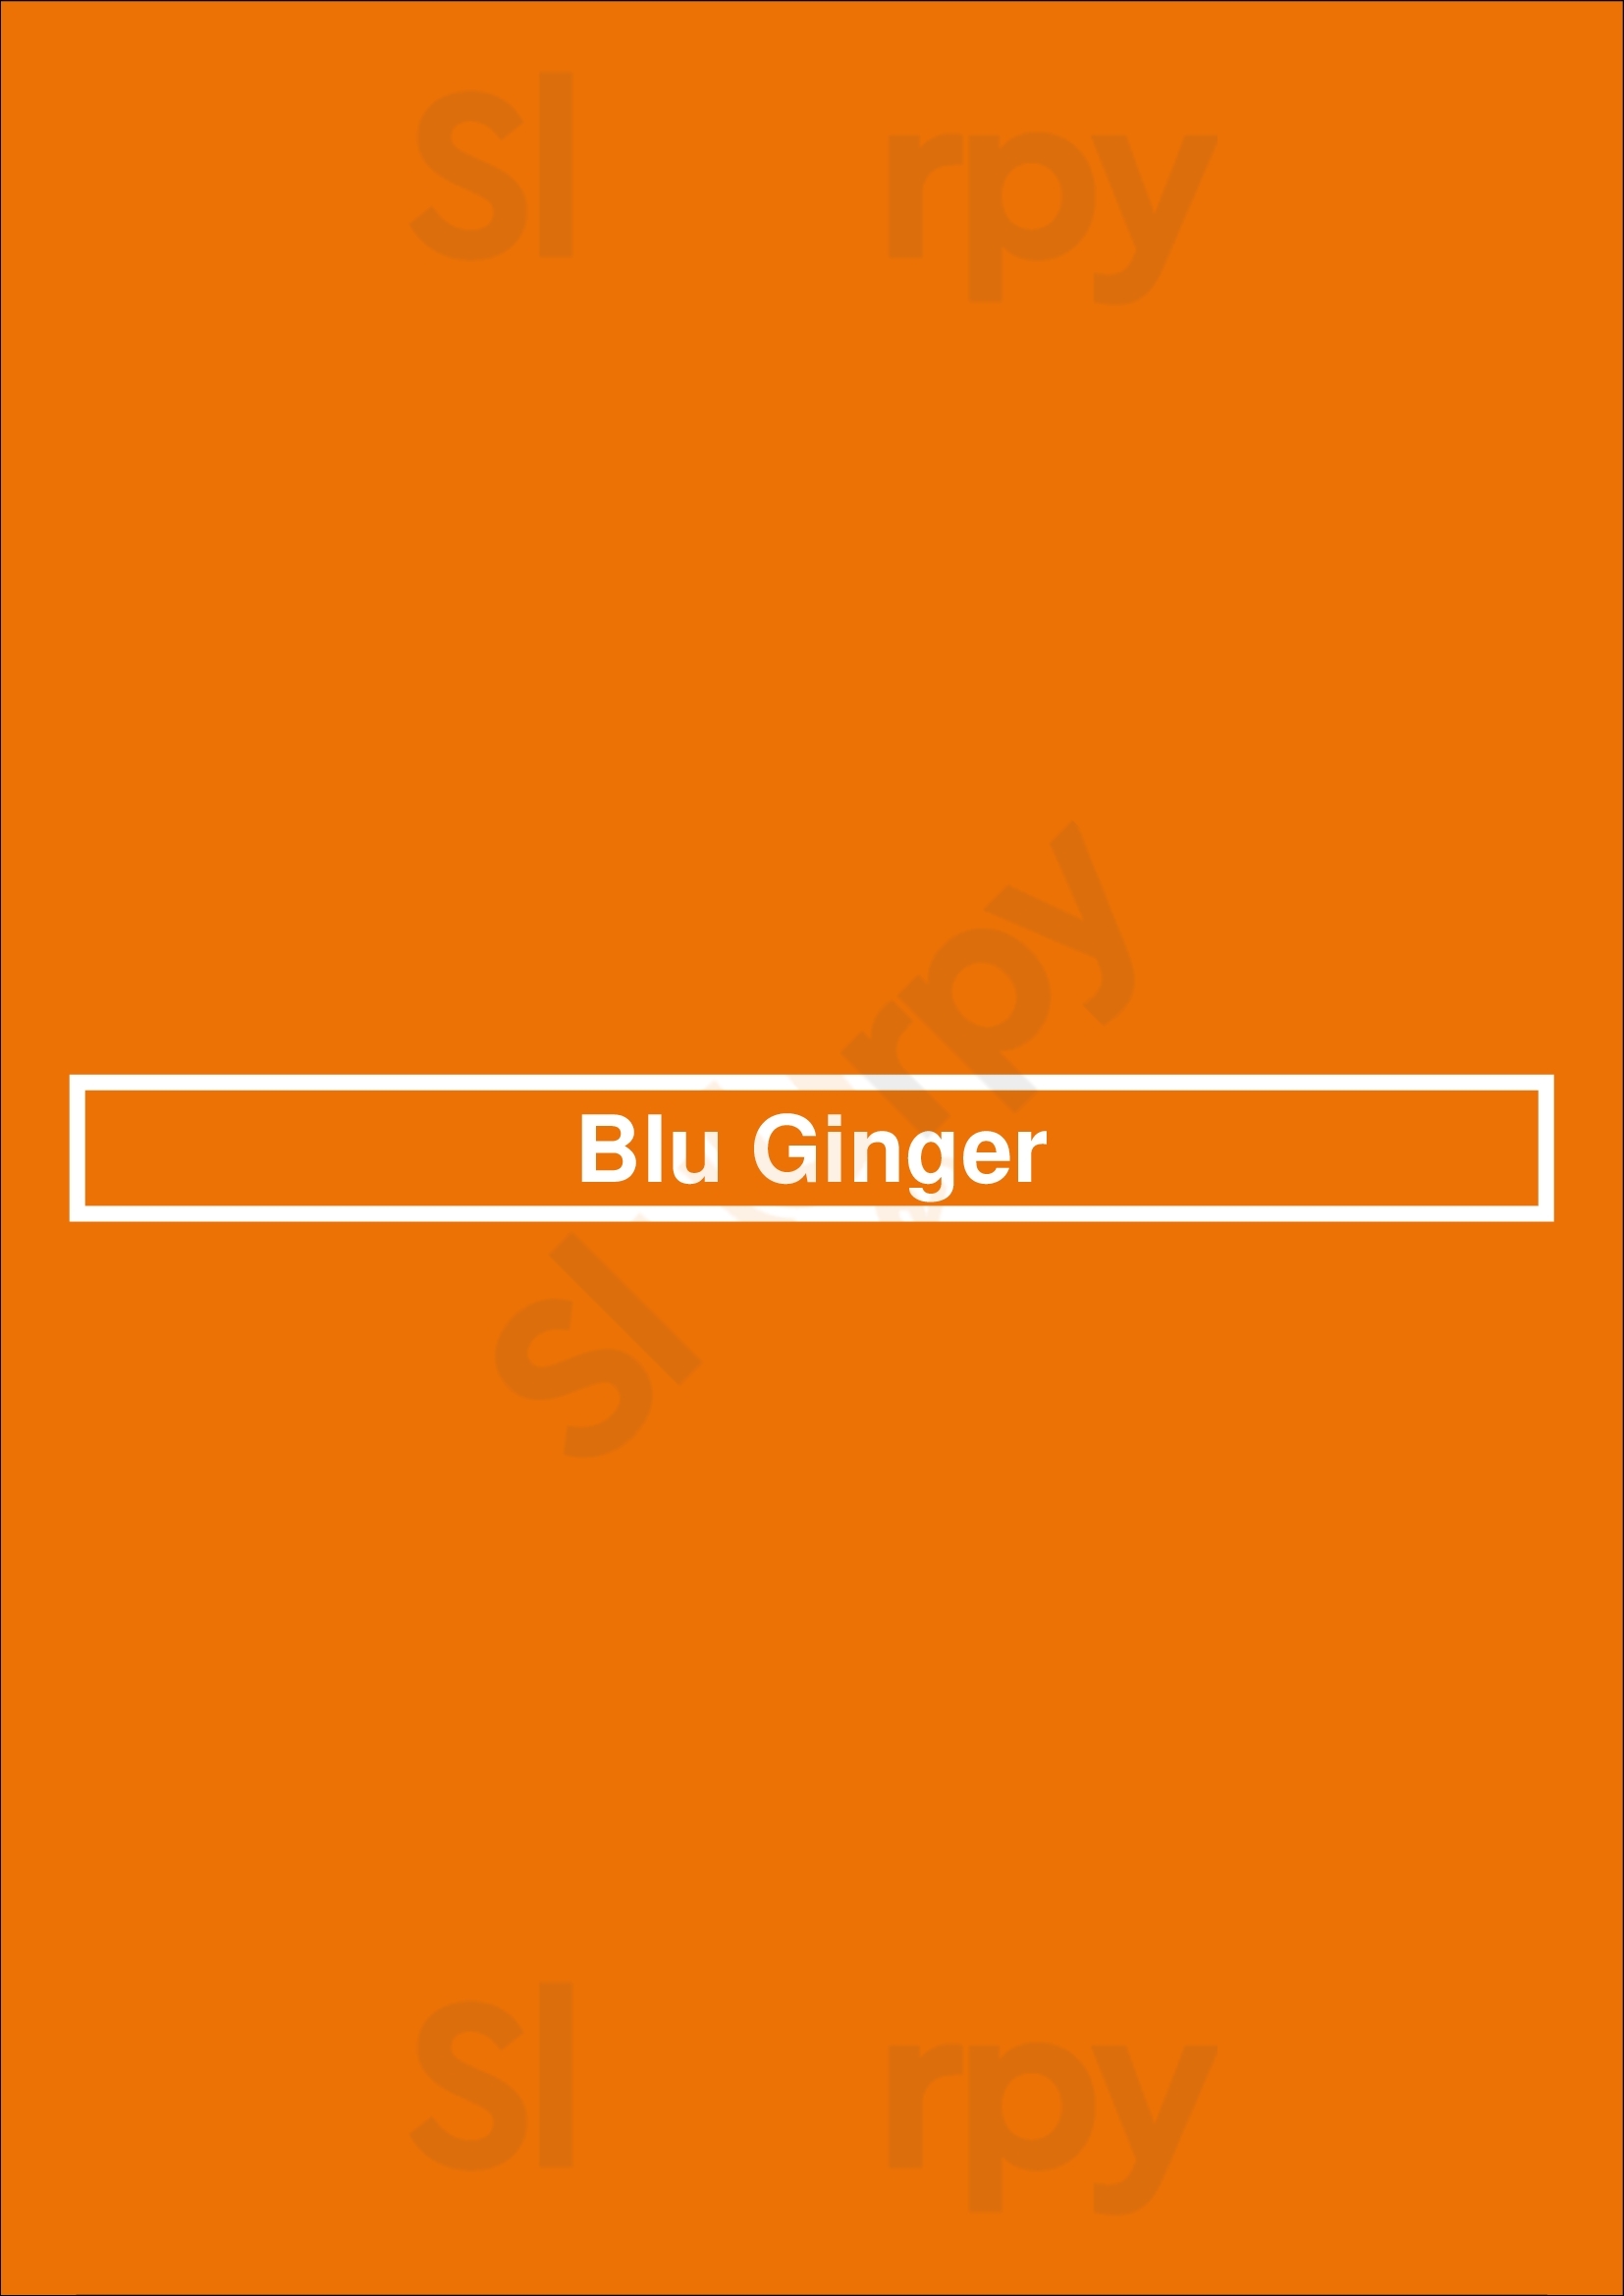 Blu Ginger Canberra Menu - 1